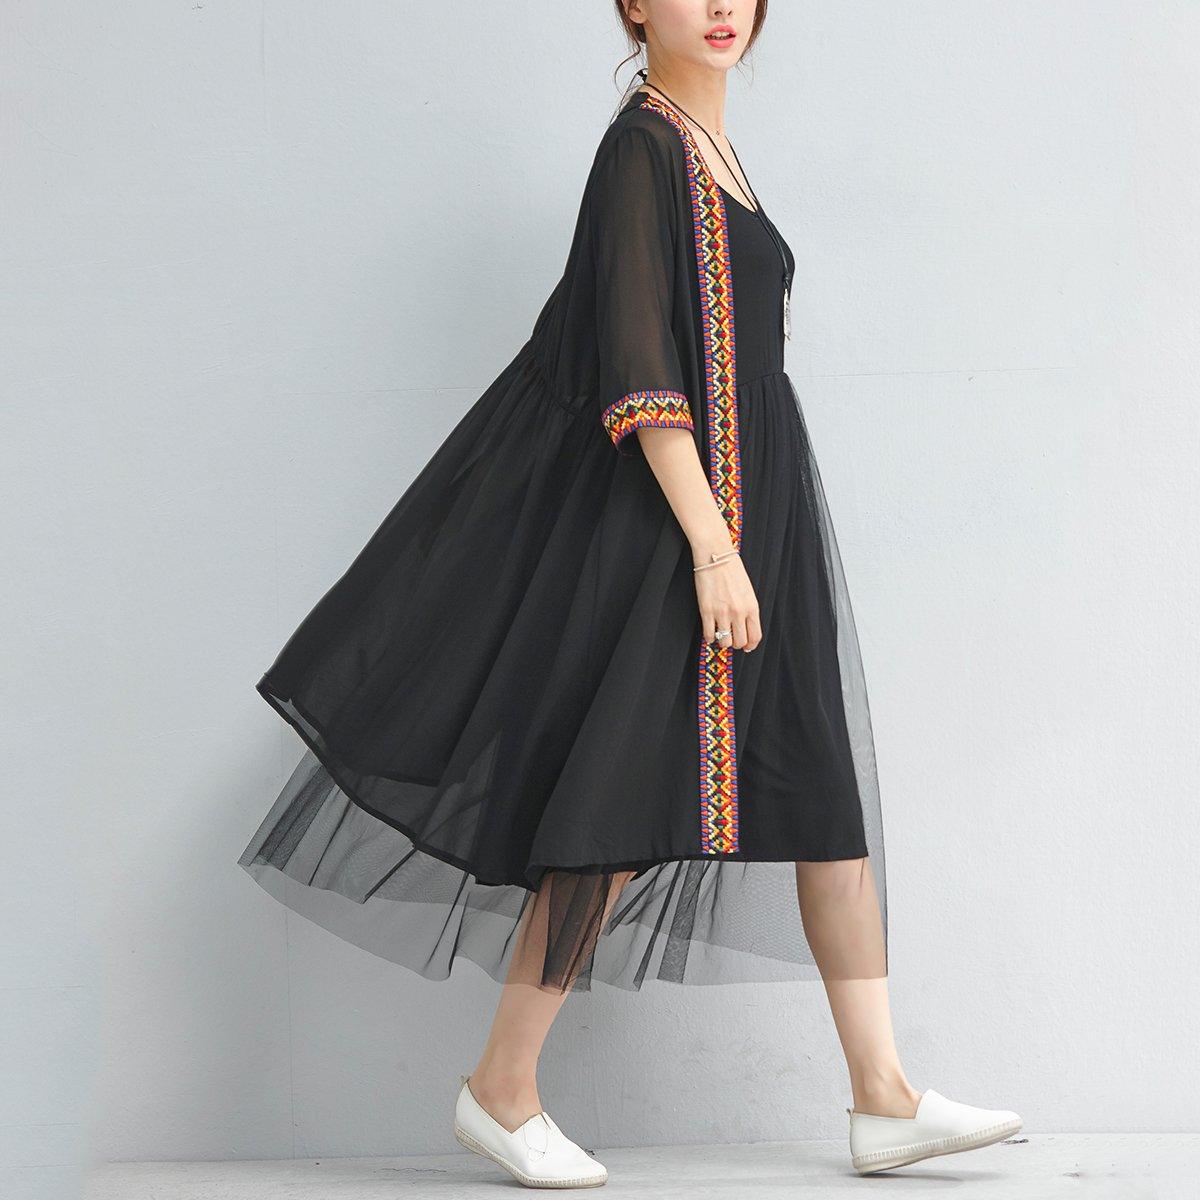 summer fashion black chiffon coat plus size embroidery sundress half sleeve cardigan - Omychic